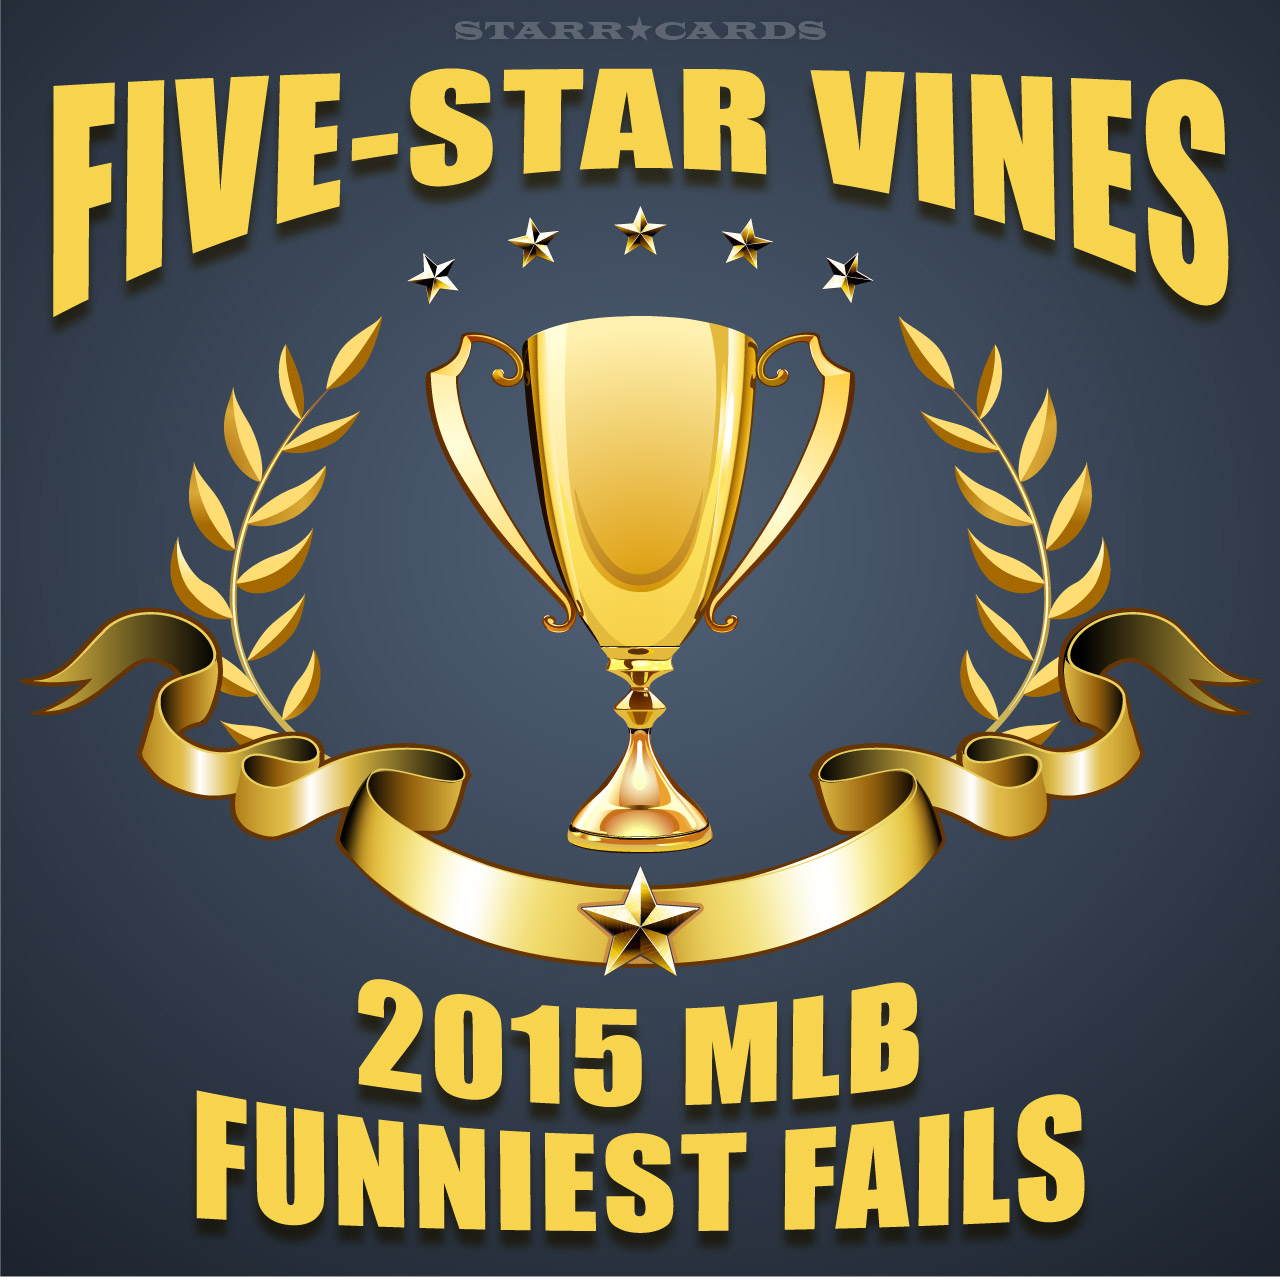 Five-Star Vines: 2015 MLB Funniest Fails